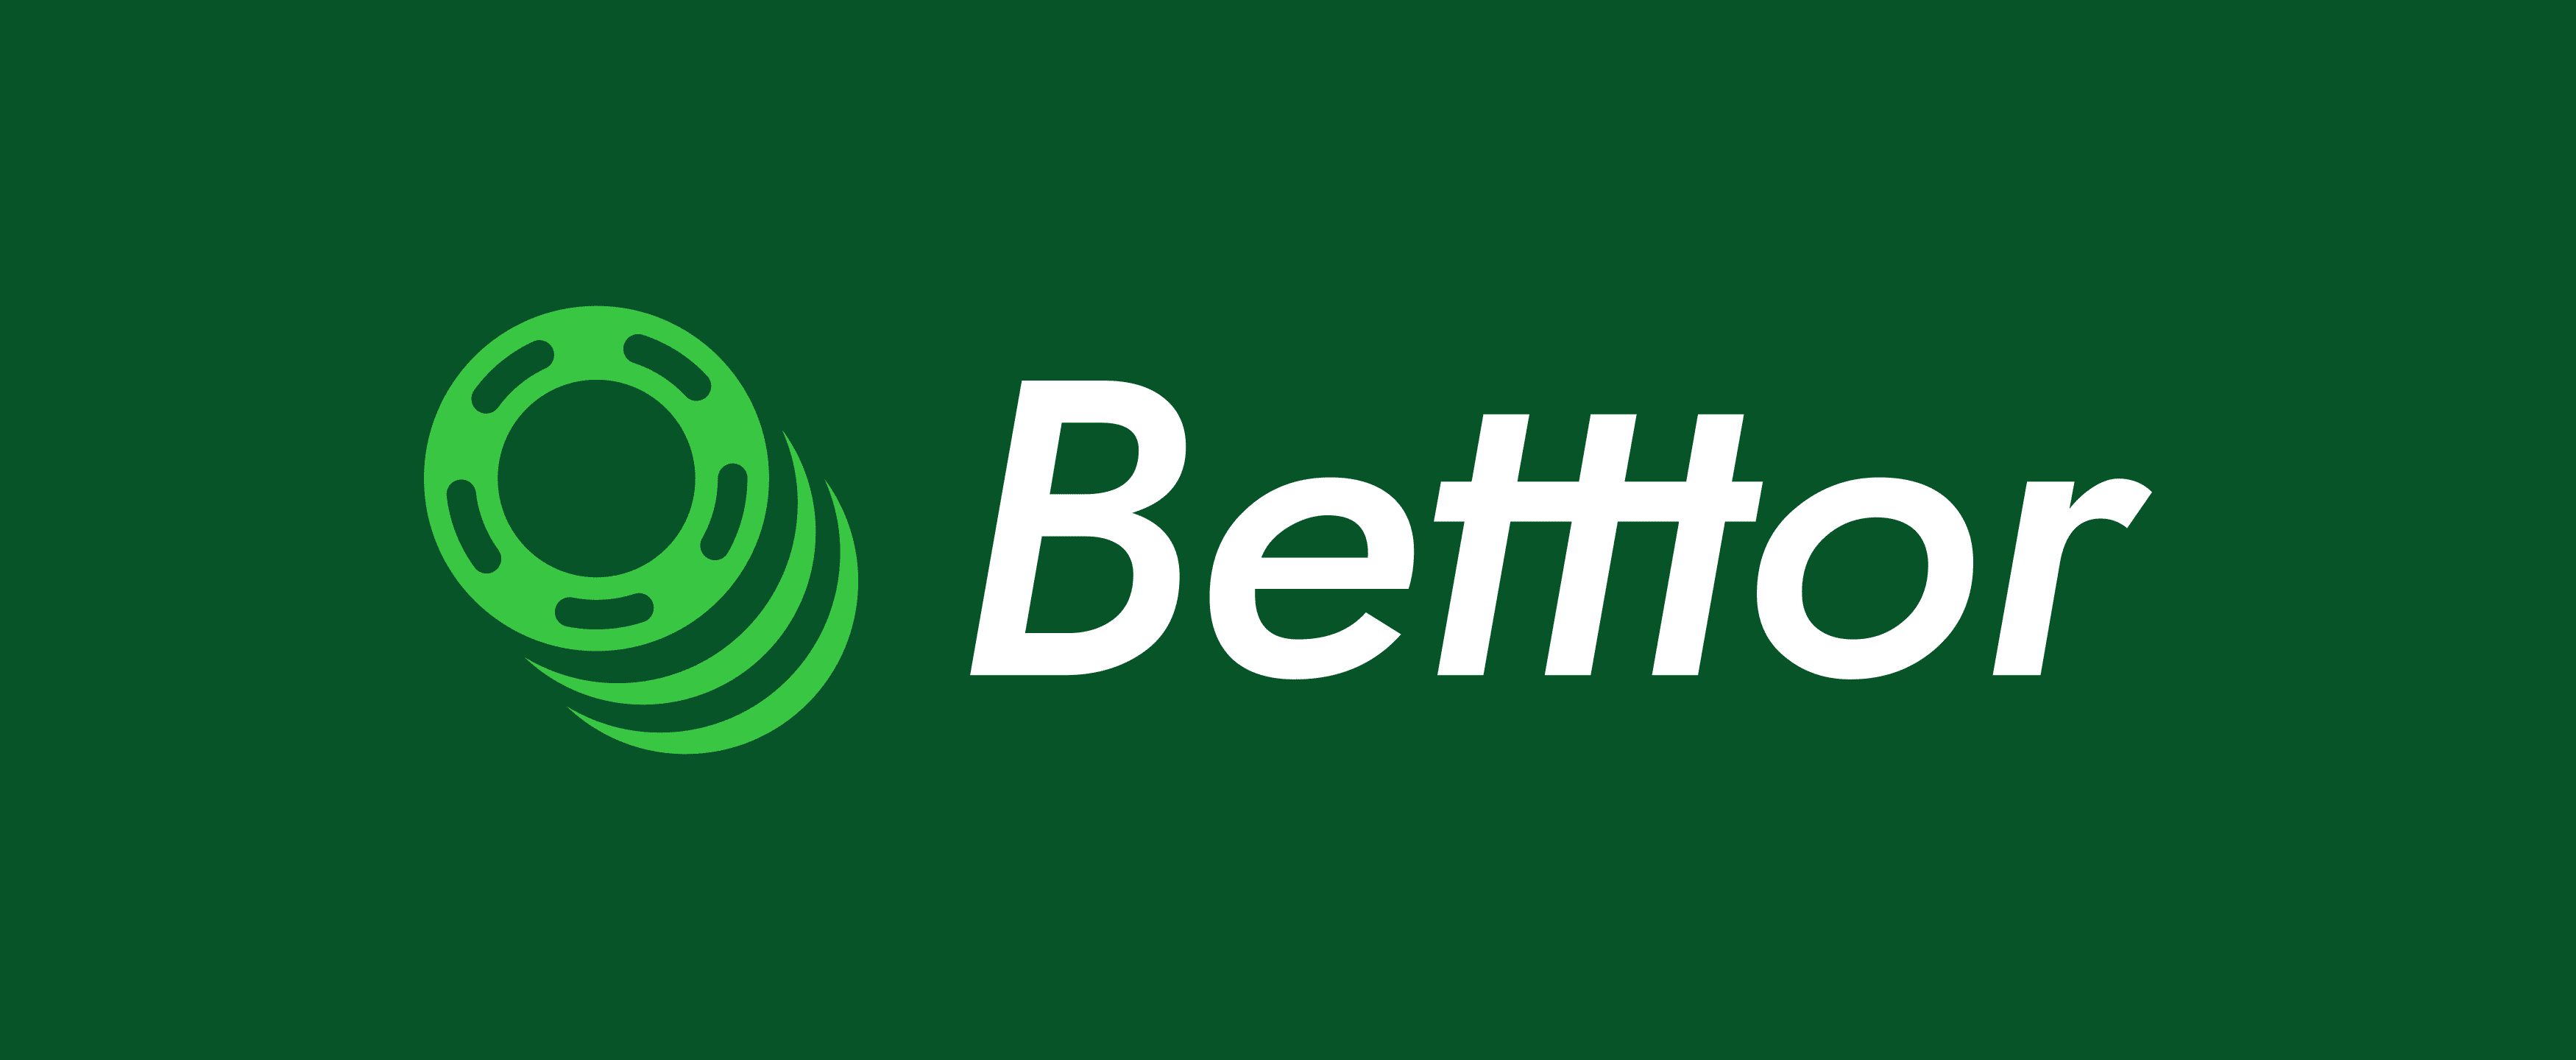 Betttor Example Branding Photo